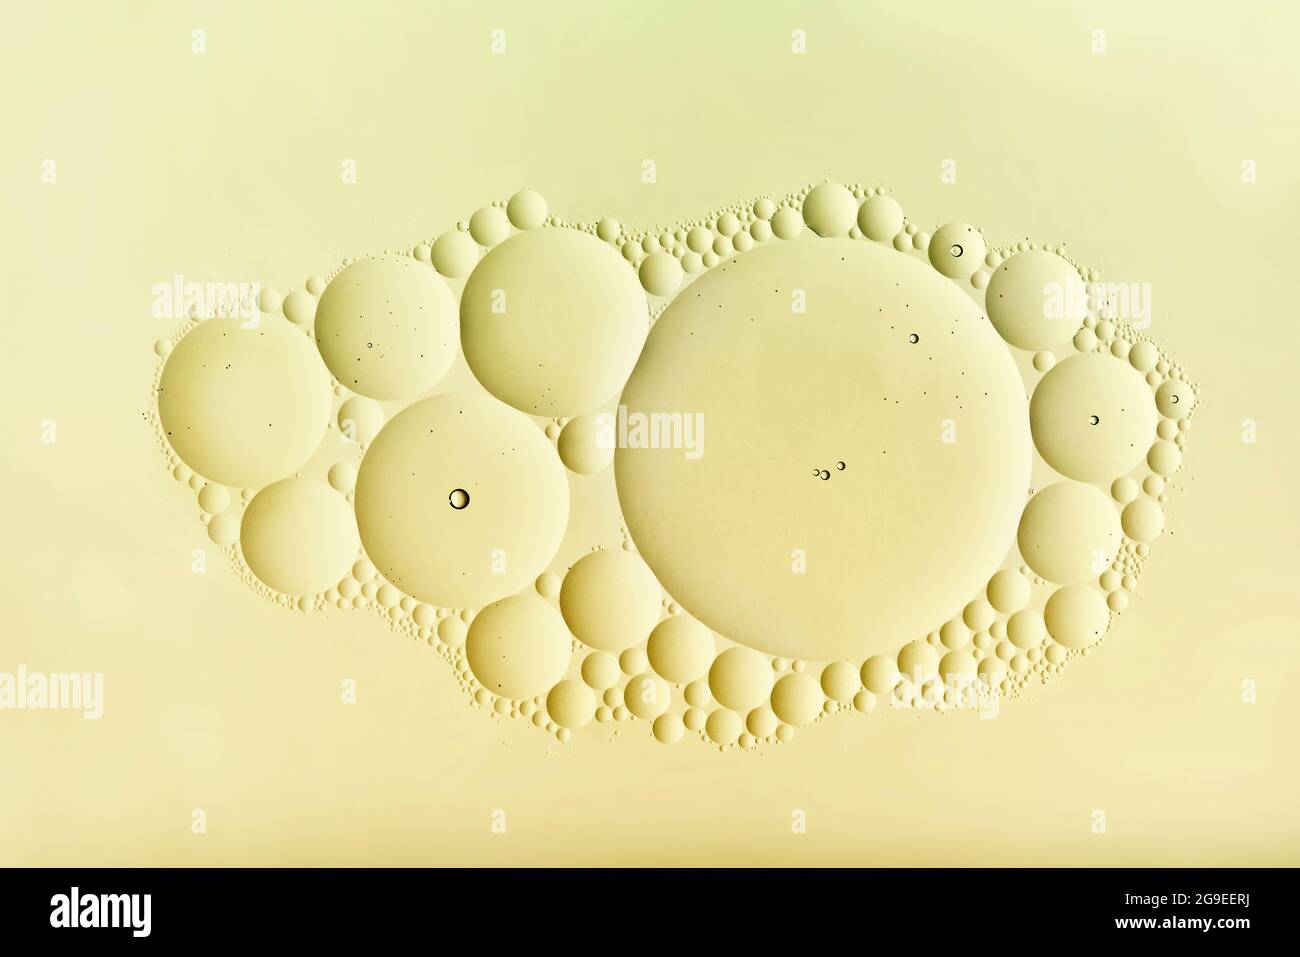 Disegno astratto decorativo di un grappolo di bolle color crema in misure assortite in una disposizione casuale centrata nel pannello con copyspace Foto Stock